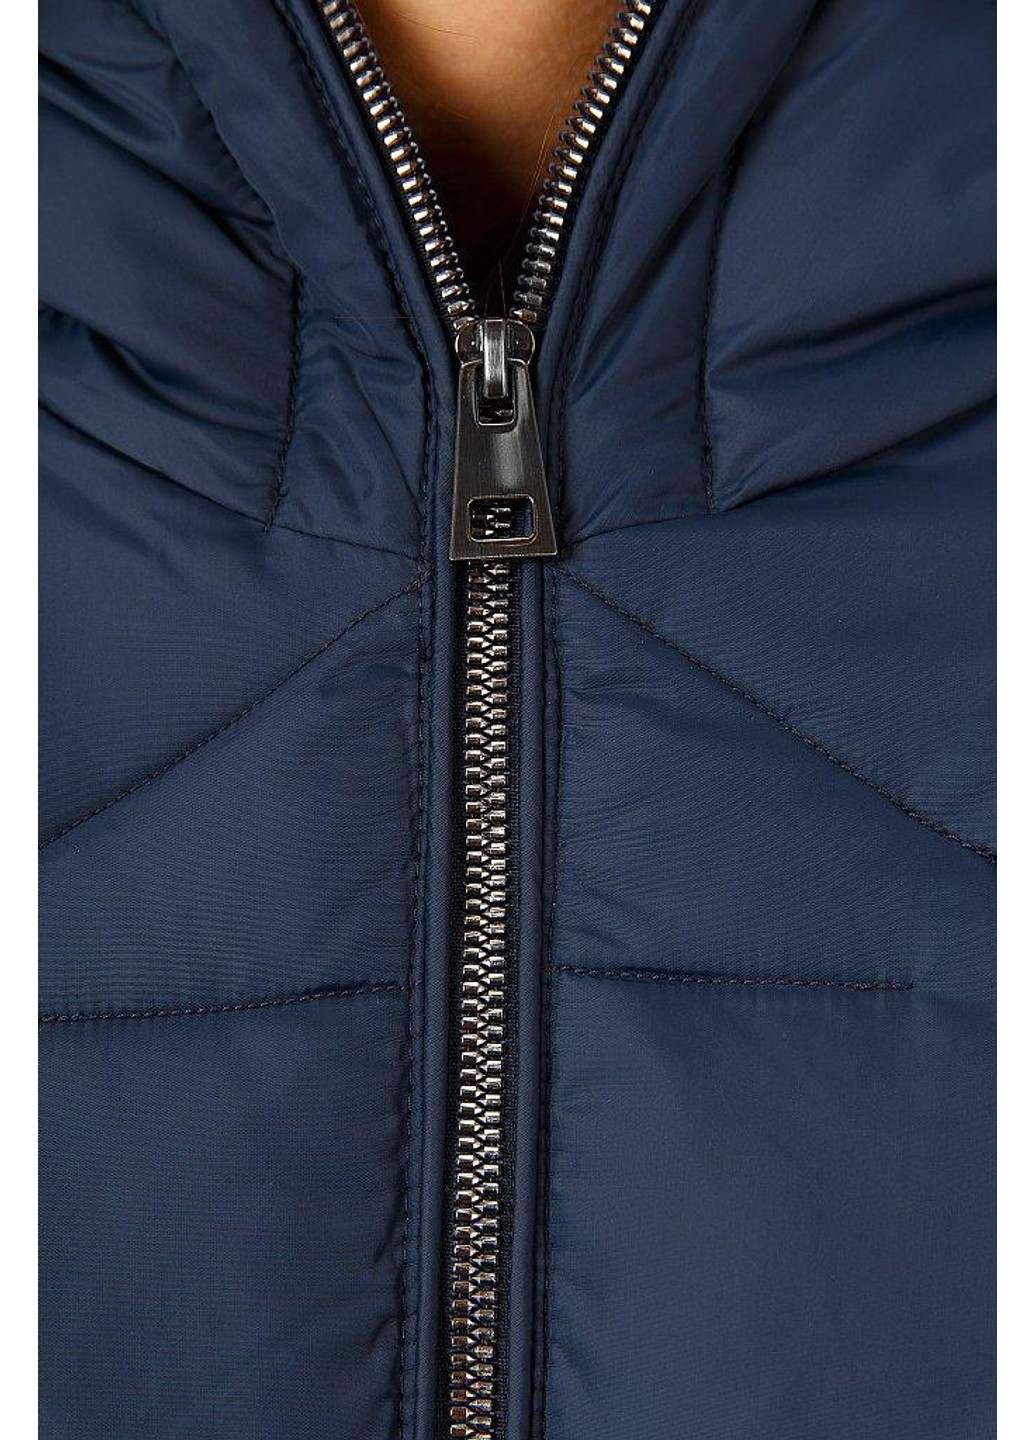 Темно-синя зимня куртка w18-12024-101 Finn Flare